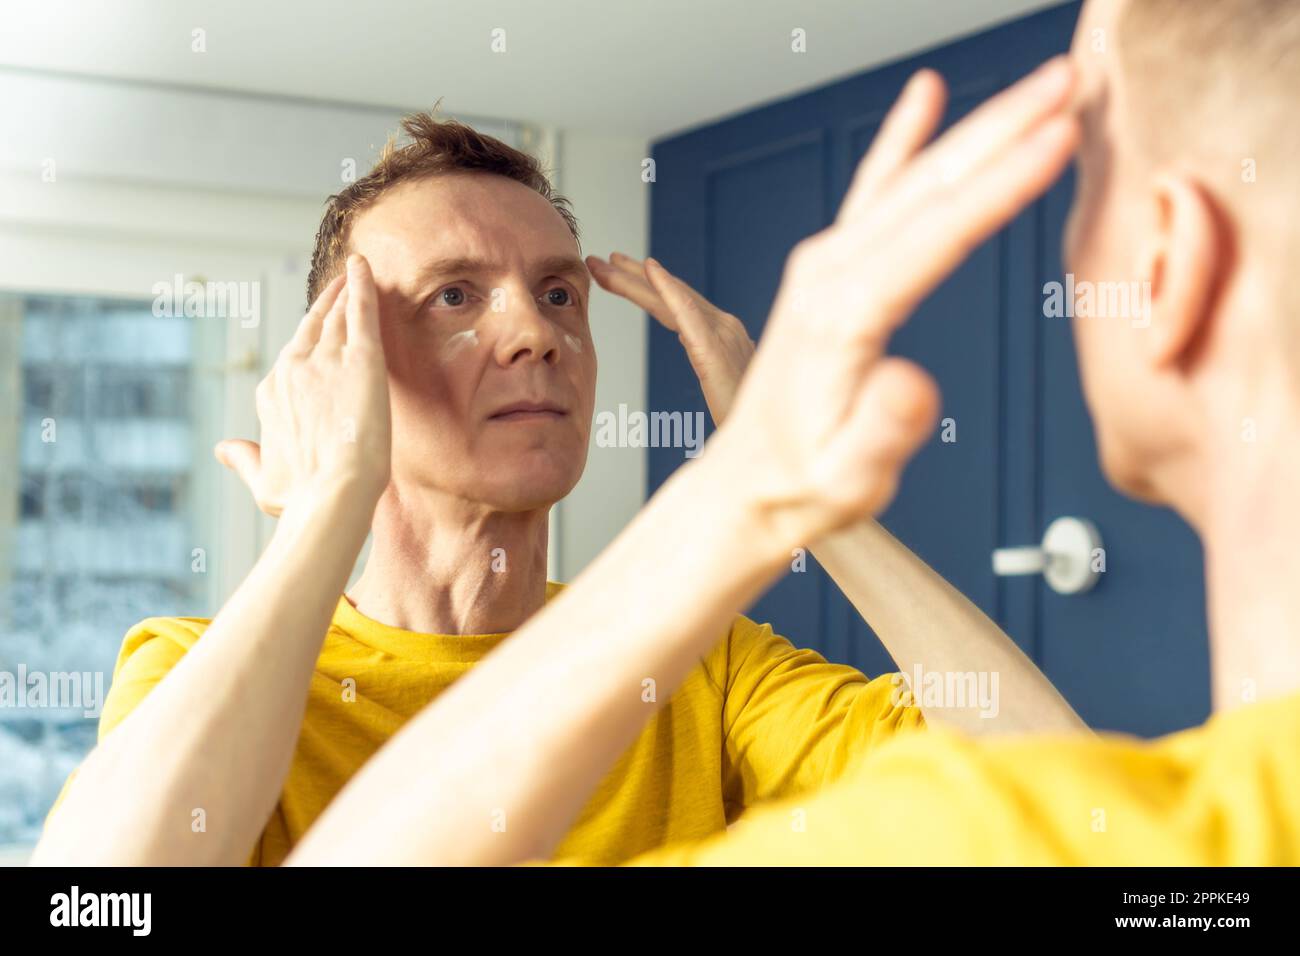 El hombre de mediana edad aplica crema en la cara clara, luego masajea con las manos. Retrato masculino en el espejo de la habitación. Concepto de cuidado facial. Foto de stock